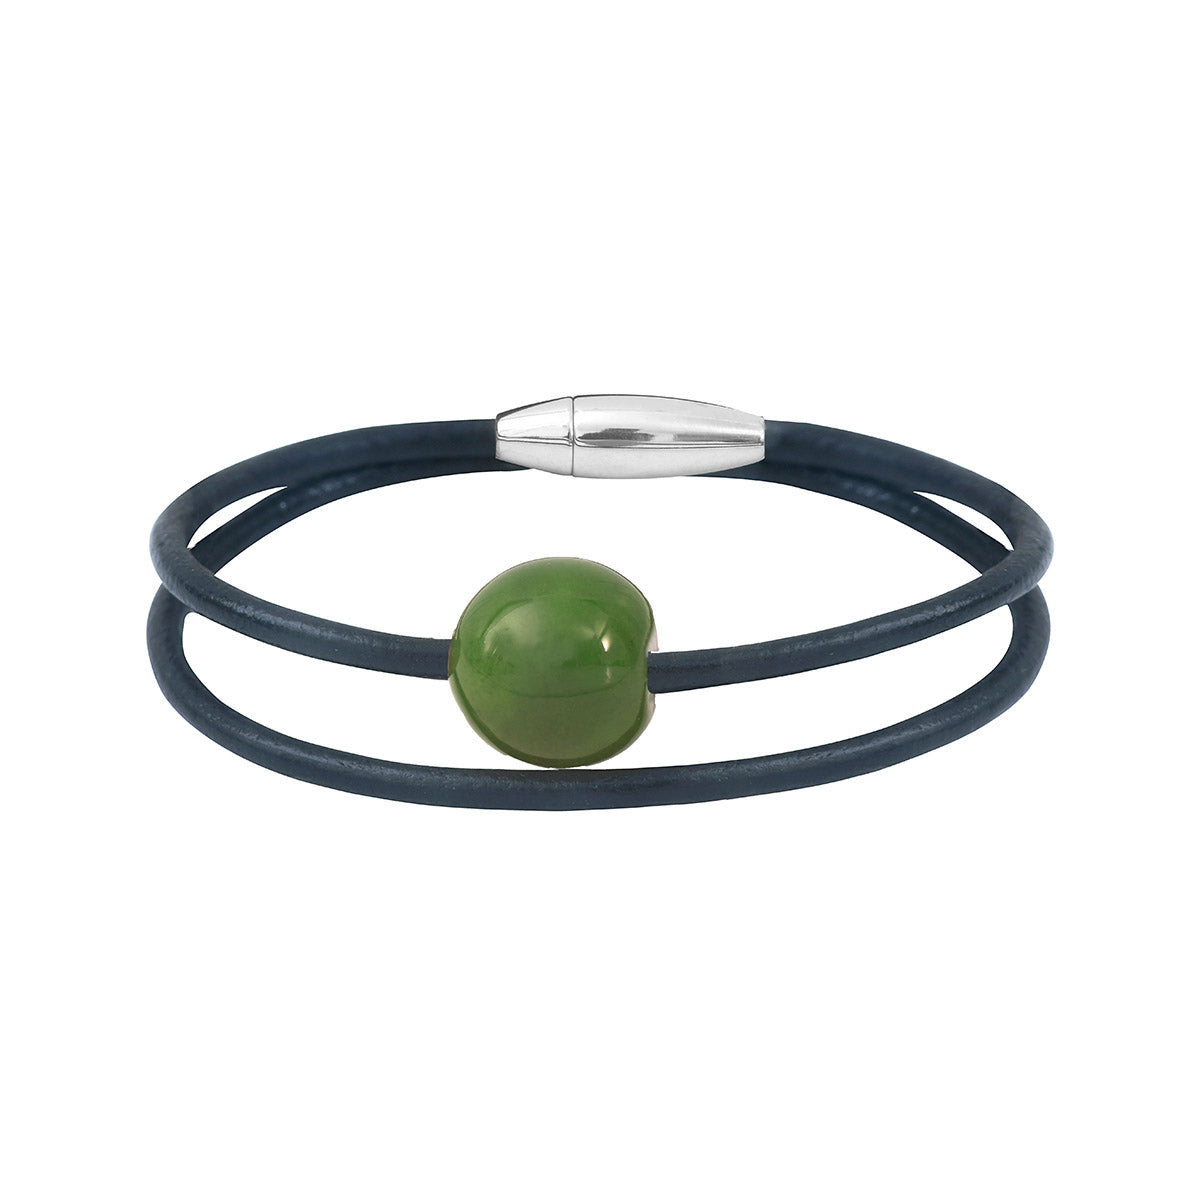 Bracelet fabriqué en cuir avec un fermoir en acier inoxydable. Graine d'ivoire végétal teintée en vert. sur double tour de cuir